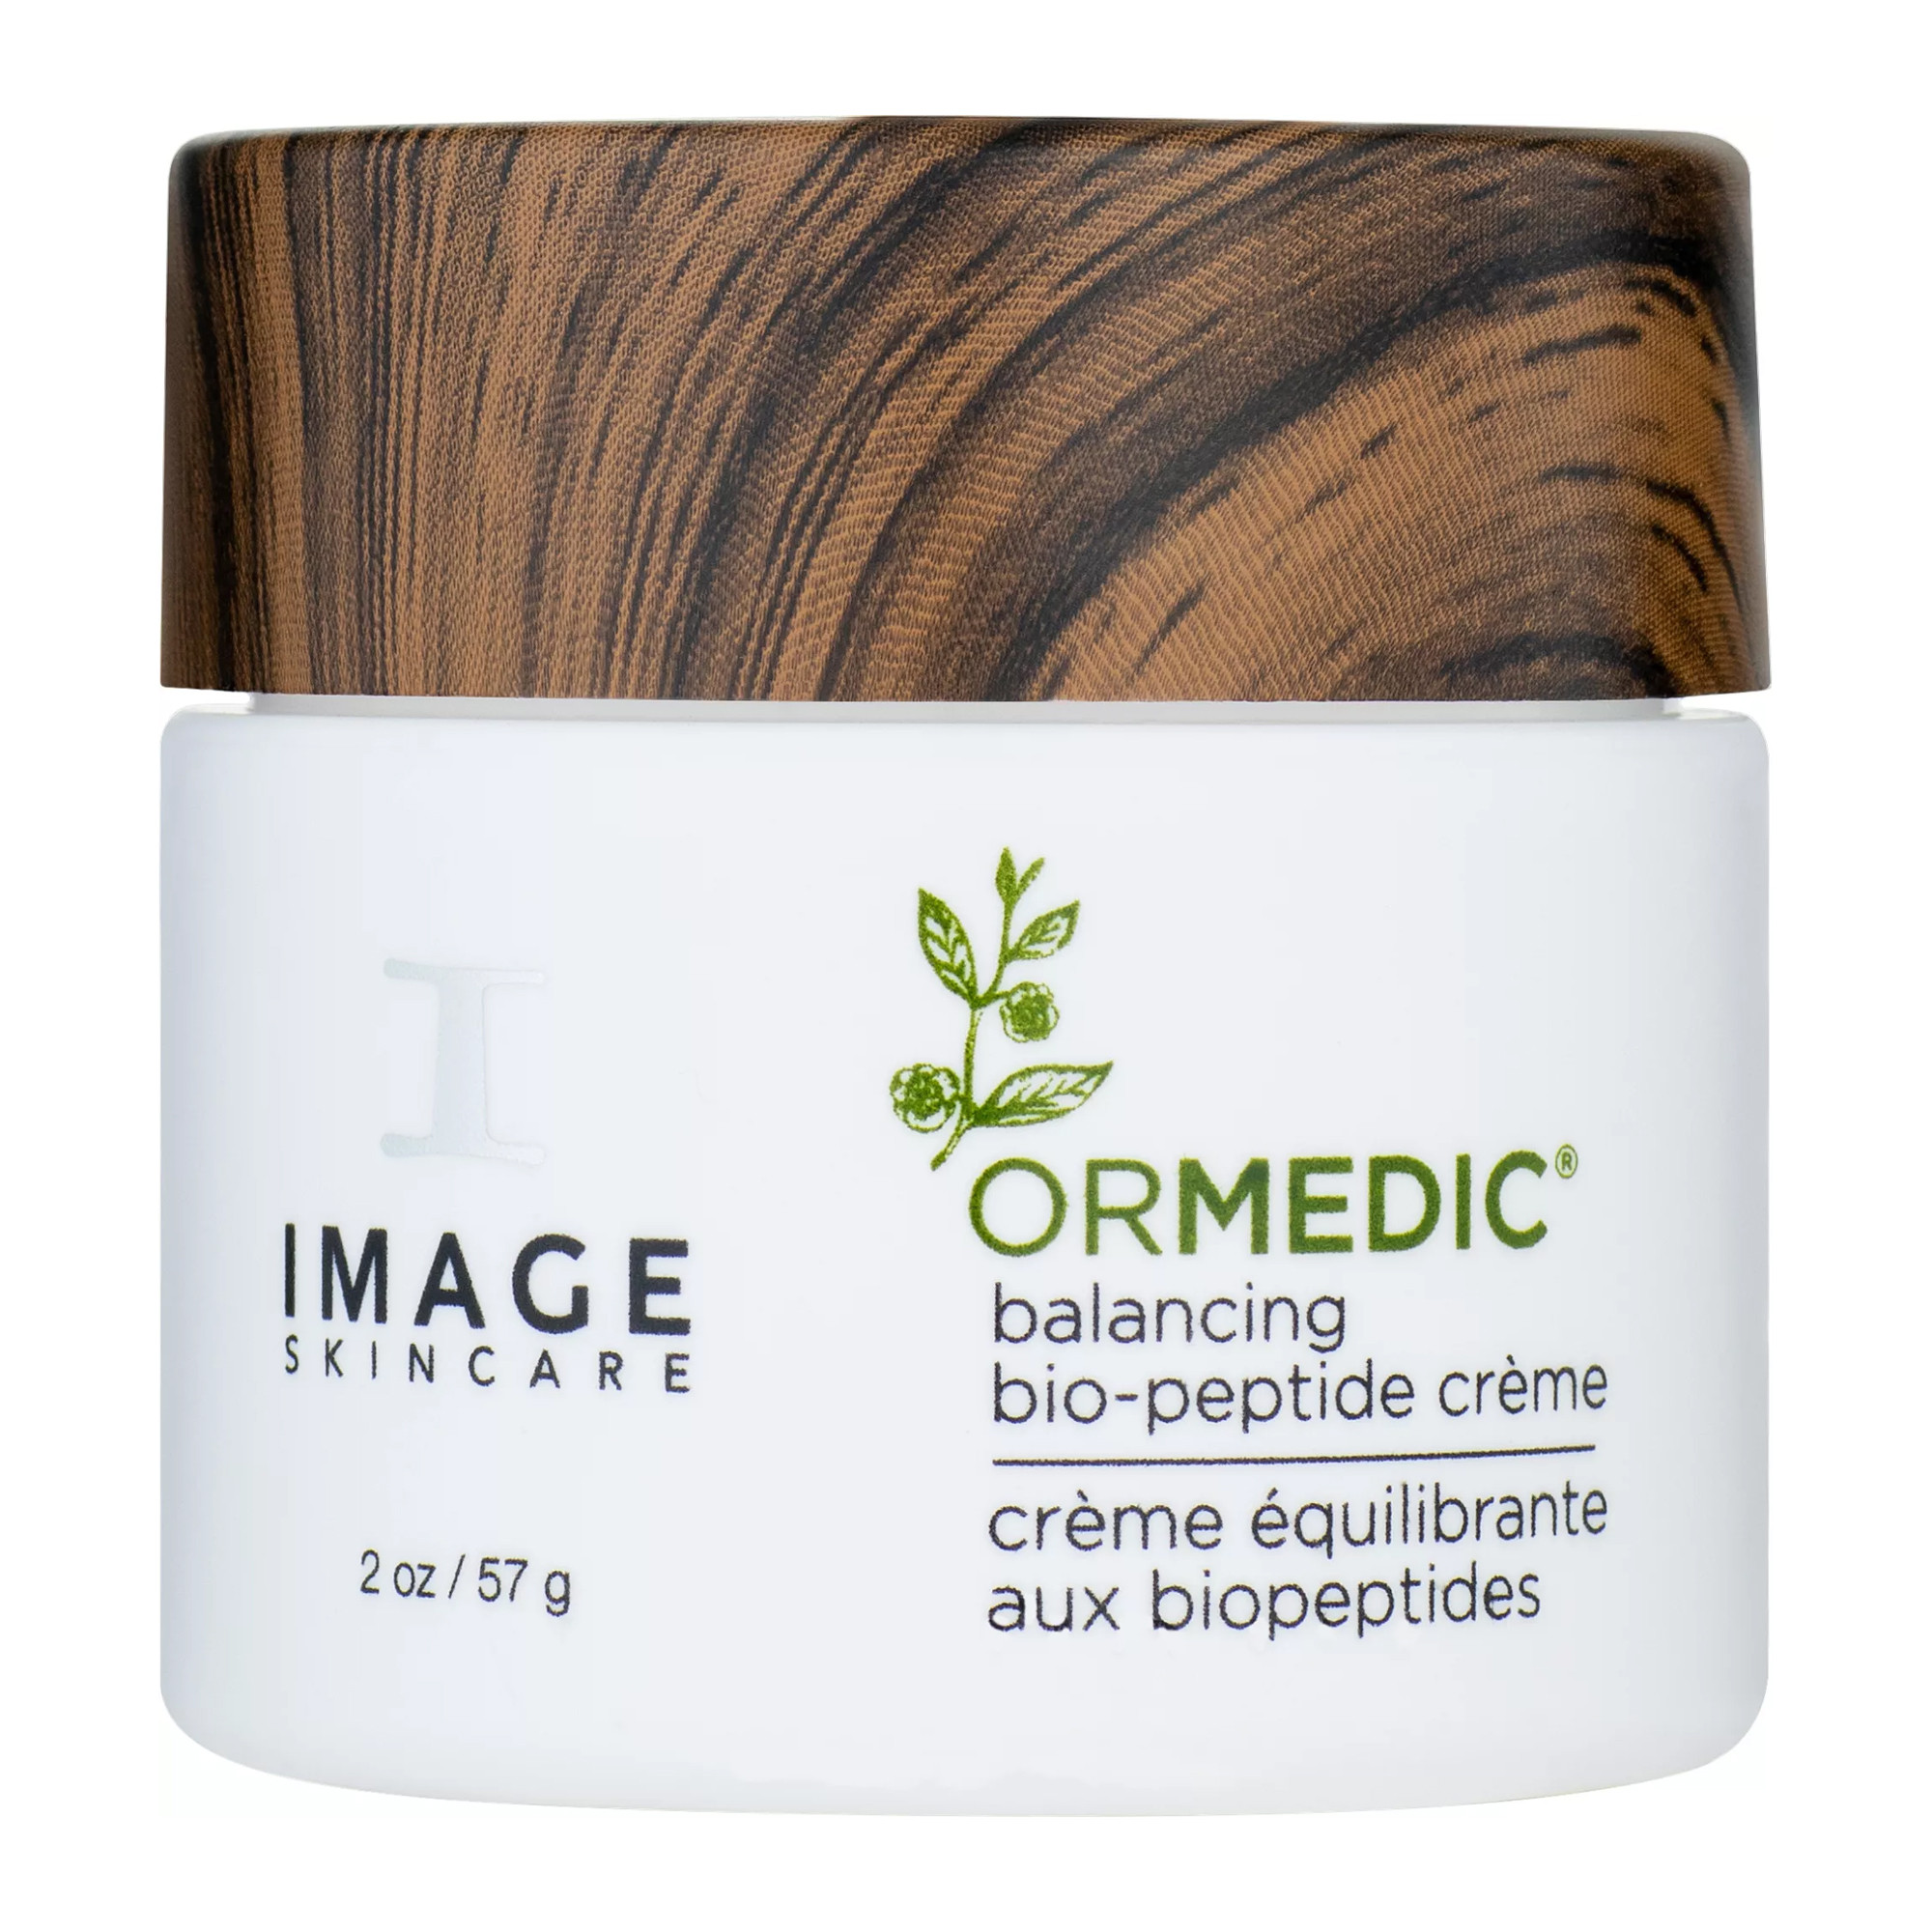 Image Skincare Ormedic Balancing Bio Peptide Cream Био-пептидный ночной крем с фитоэстрогенами